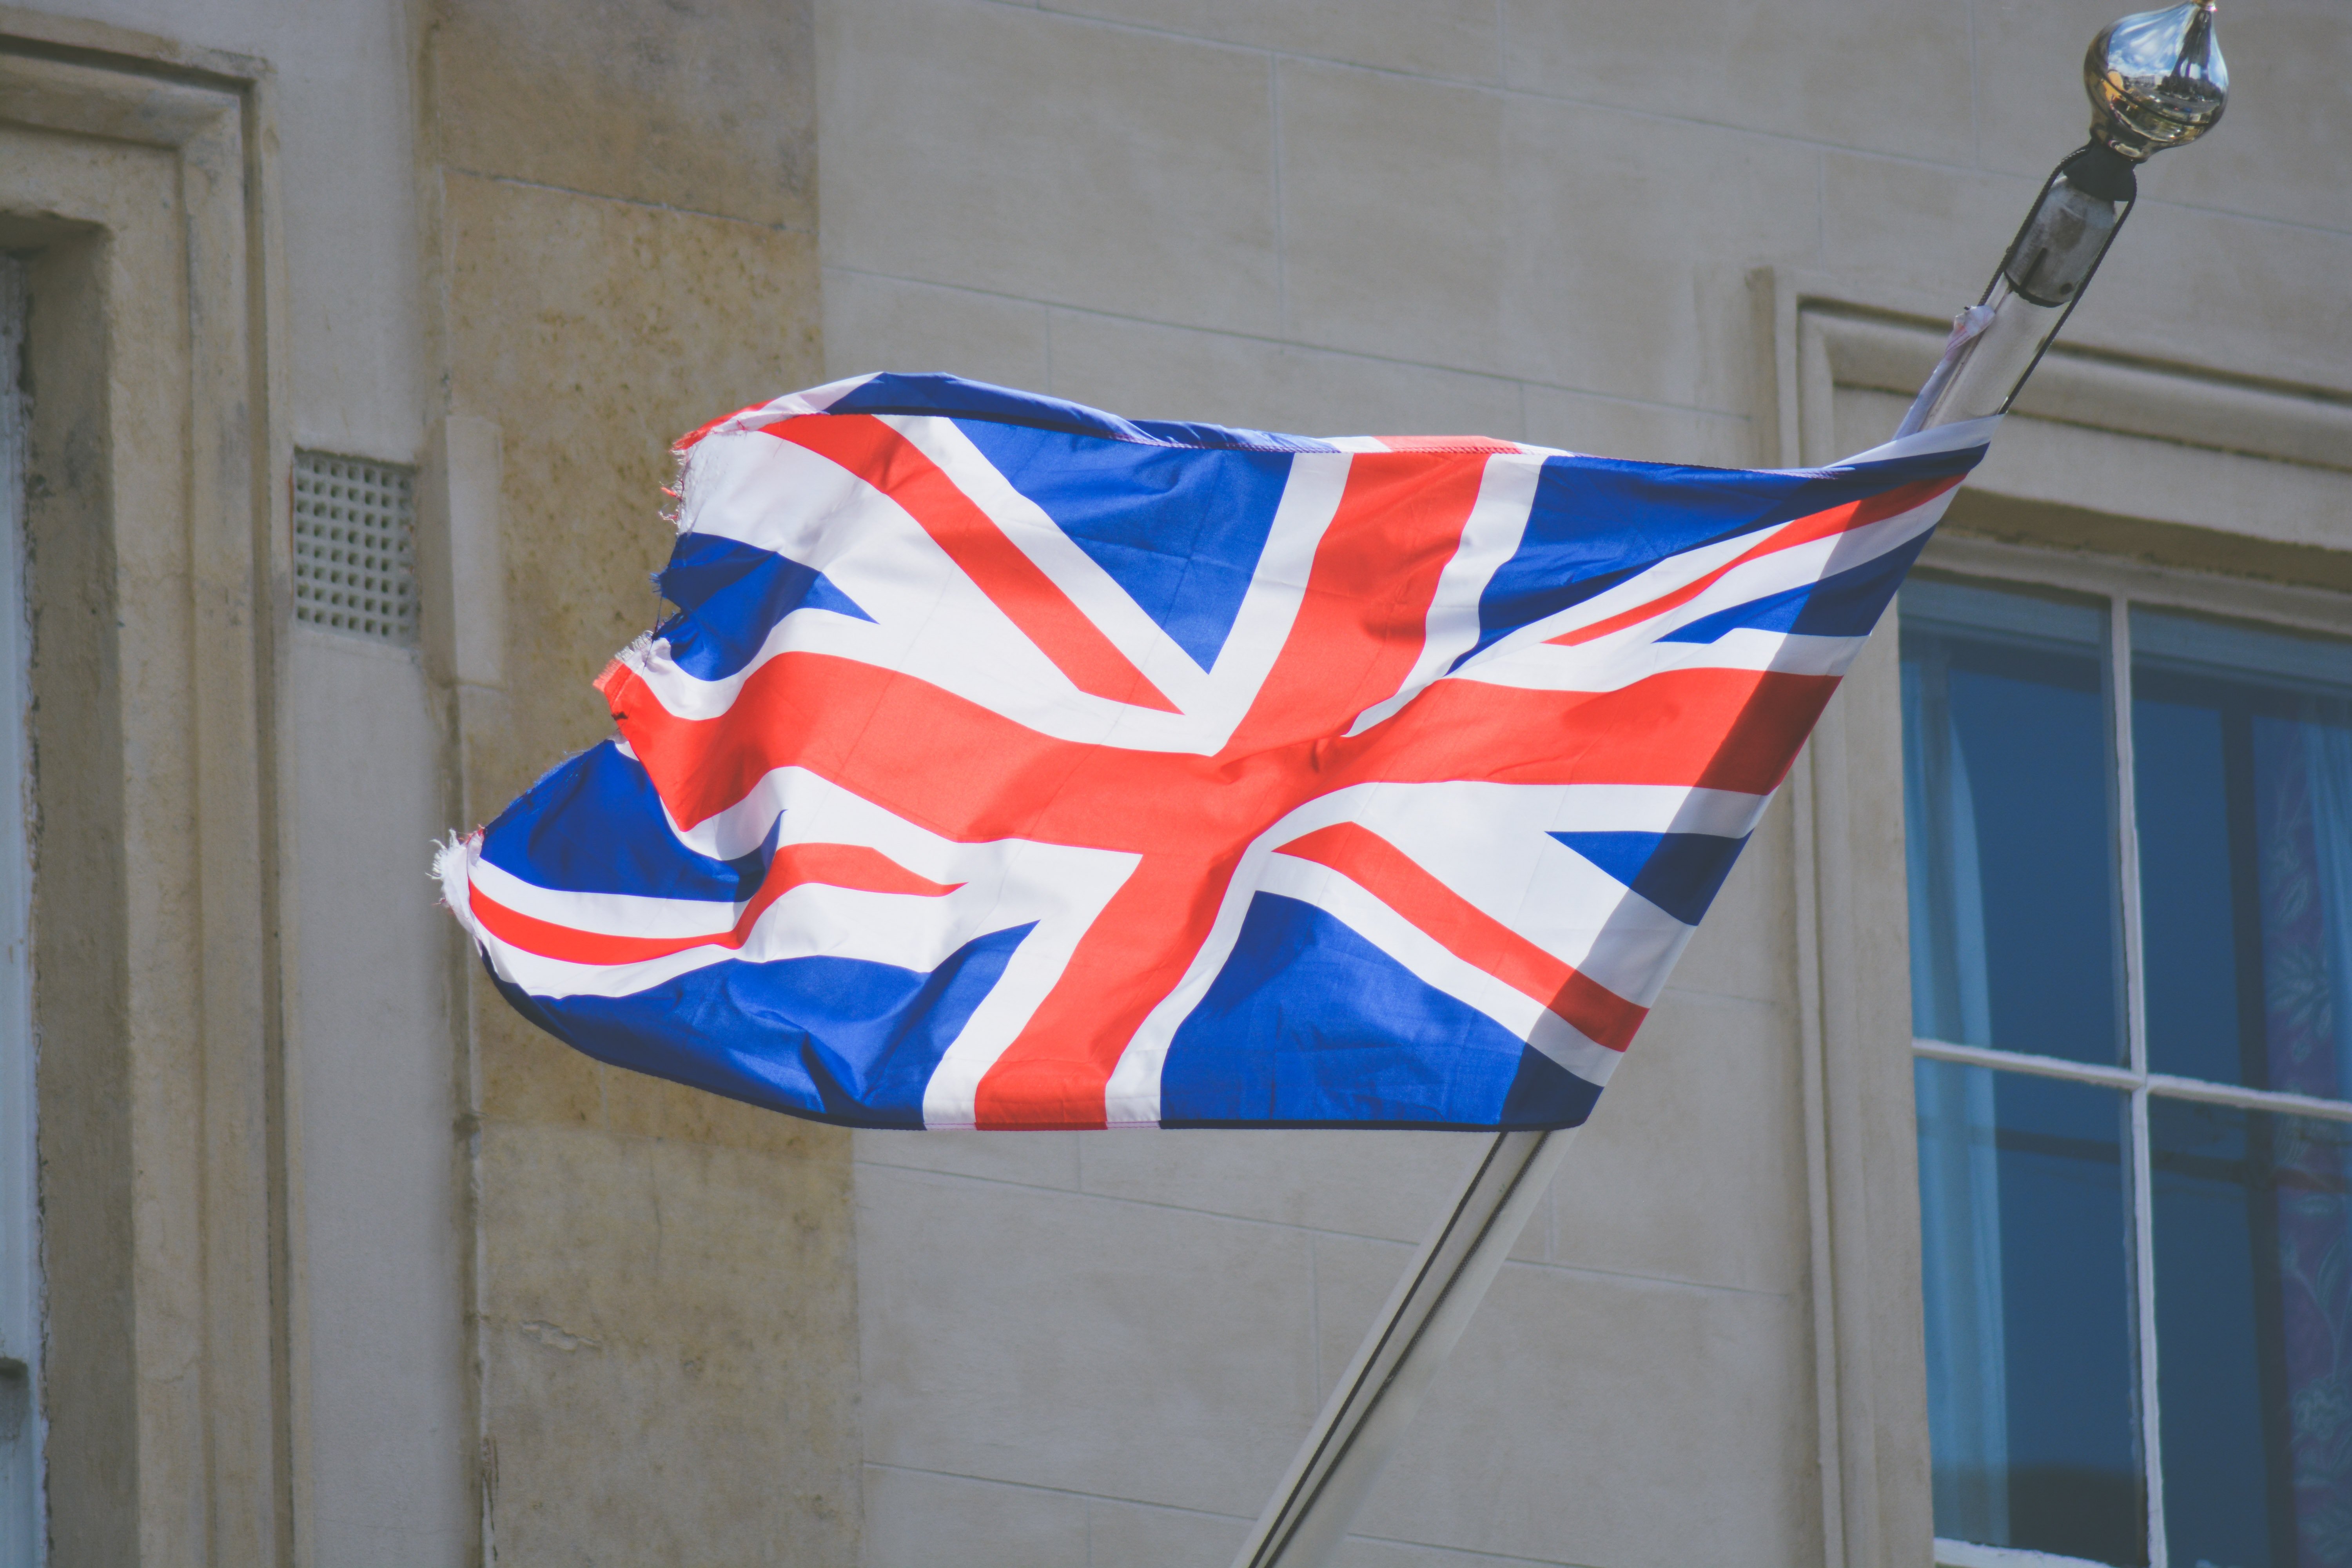 Ward Hadaway советует развивать британский финтех-сектор, выдавая визы талантливым людям